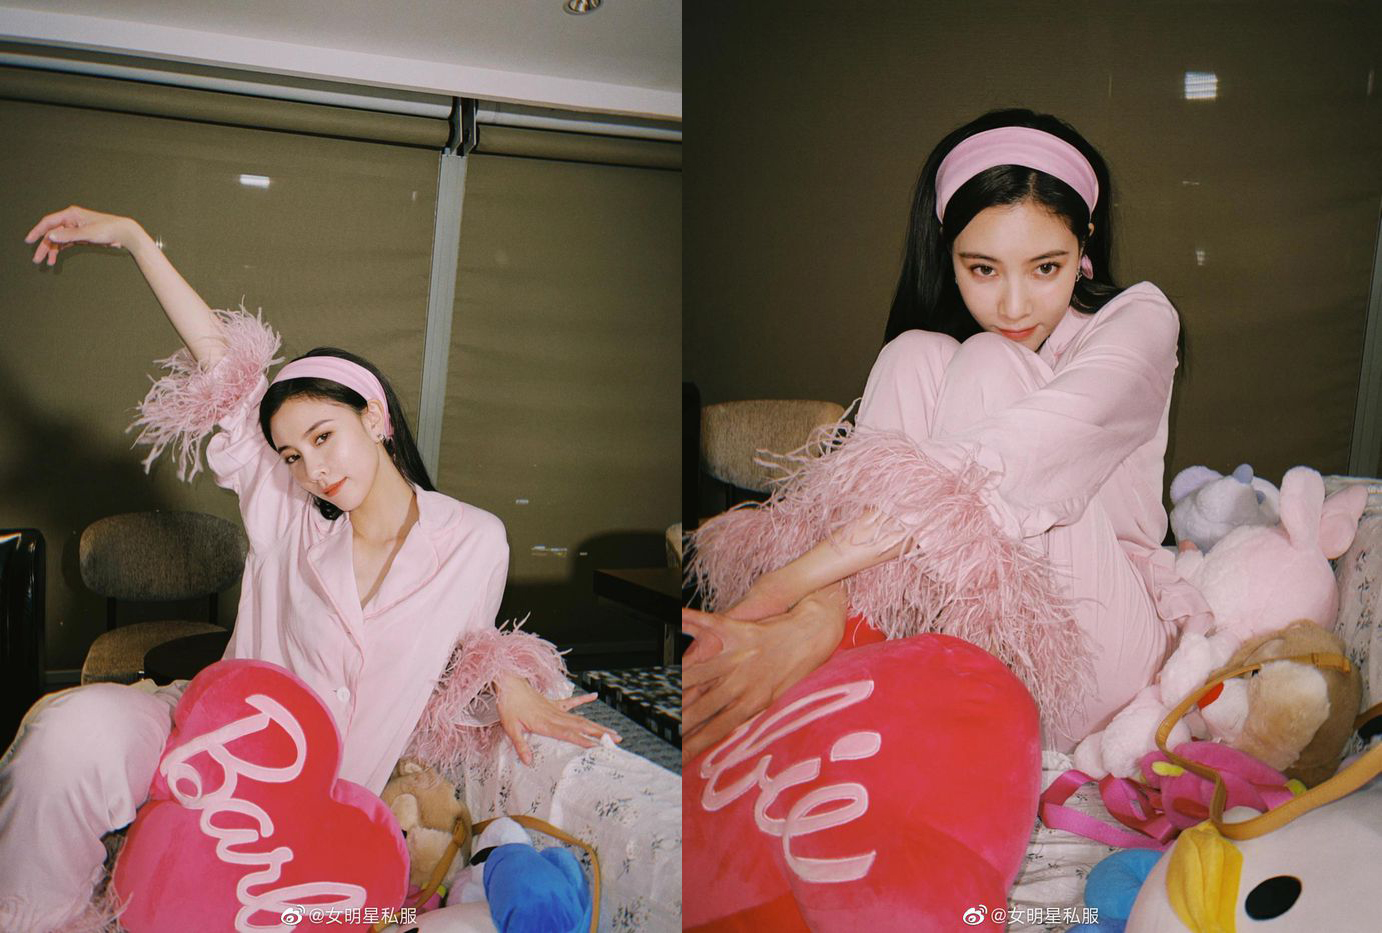 Diện đồ ngủ tương tự Jessica, Tống Nghiên Hy mang đến hình ảnh ngọt ngào, nữ tính với set đồ pijama màu hồng pastel, phần tua rua cũng màu hồng nốt.